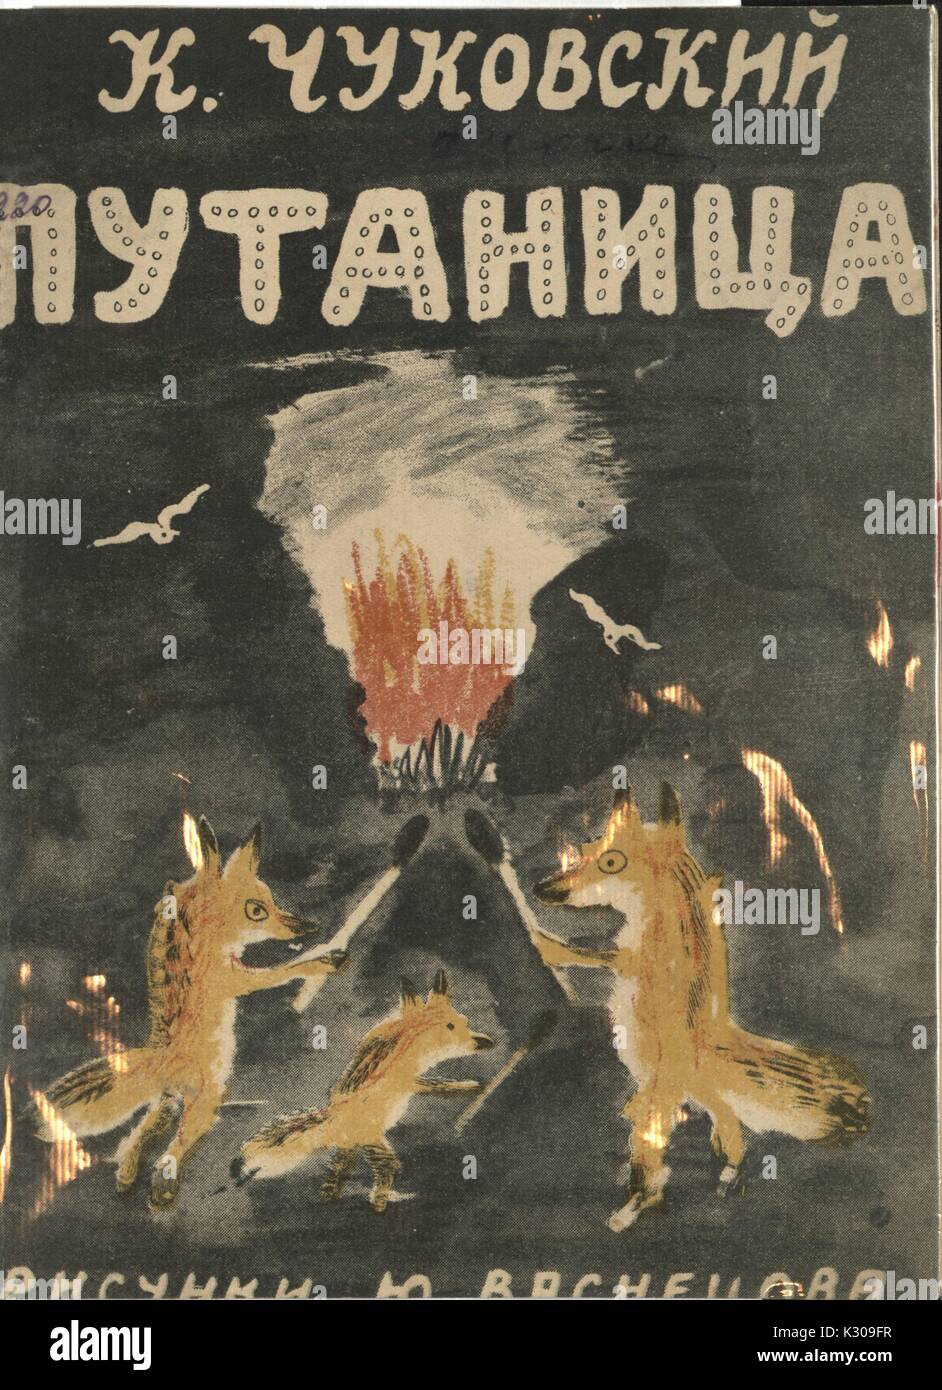 Ein Cover von einem russischen Märchen mit dem Titel "Durcheinander" mit Füchsen Beleuchtung ein Brand, der durch und durch Chukovskiy Vasnetsova, 1950 dargestellt. Stockfoto